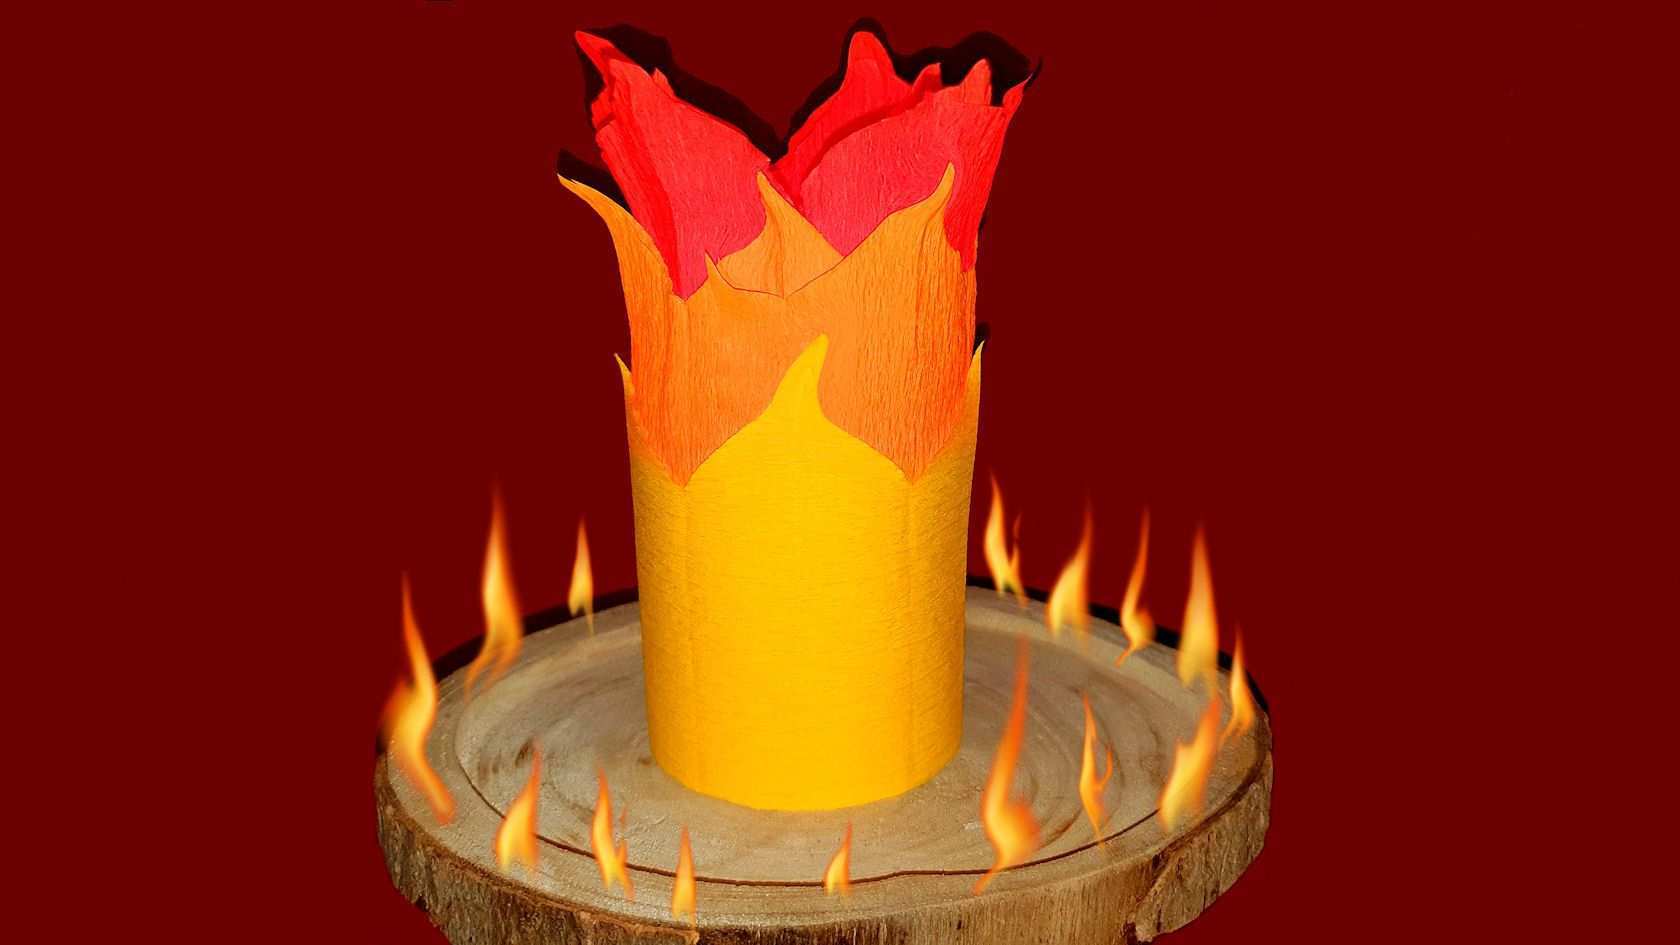 Diy Windicht Mit Flammen Aus Krepppapier In 2020 Krepppapier Kerzen Basteln Windlichter Selber Machen